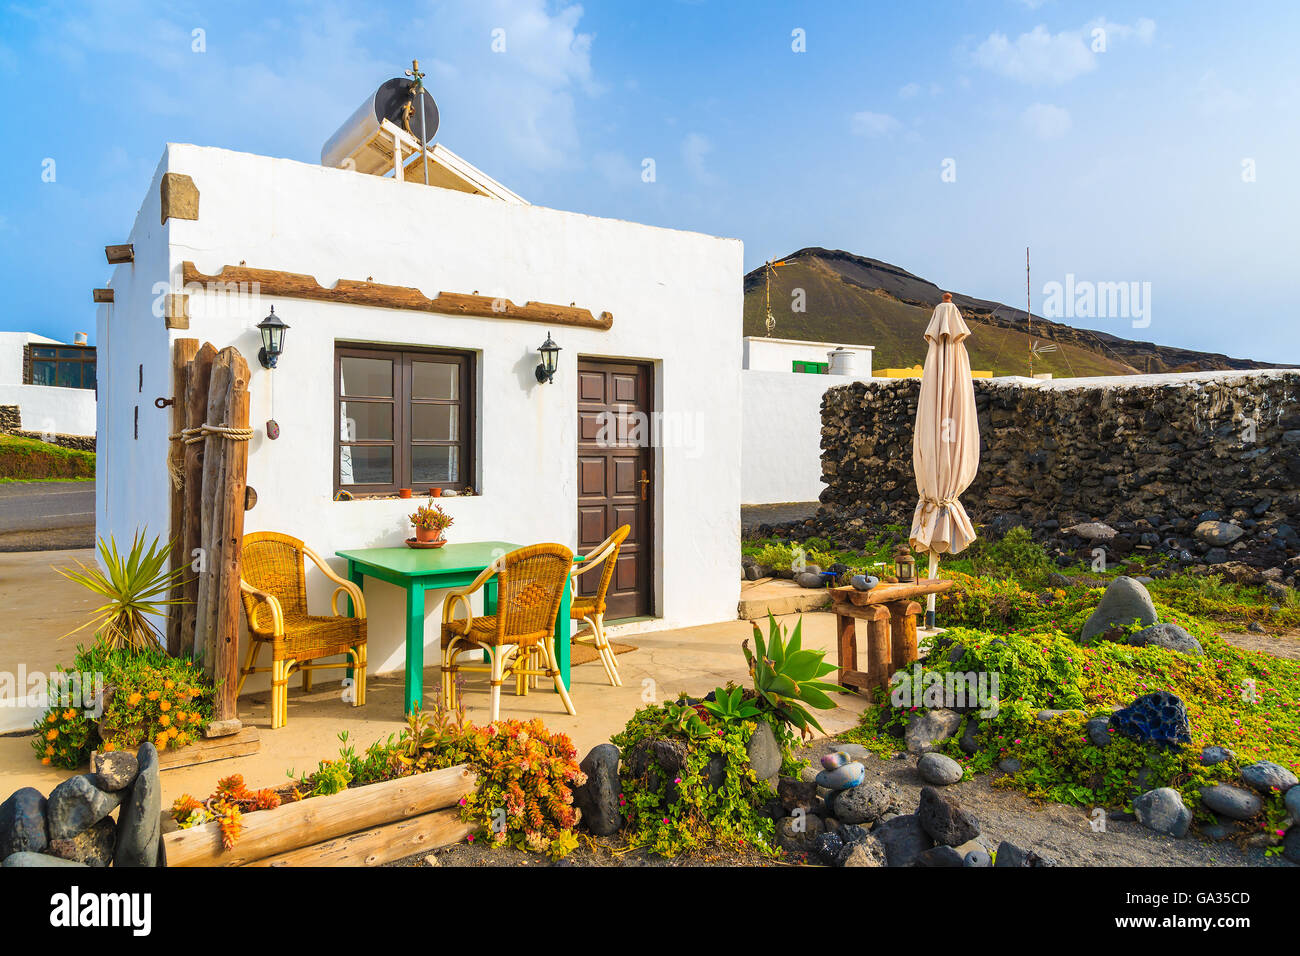 EL GOLFO BEACH, Lanzarote Island- Jan 12, 2015: tipica canaria casa per turisti su El Golfo beach. Le isole Canarie sono molto popolare meta di vacanza in inverno a causa di tempo soleggiato tutto l'anno. Foto Stock